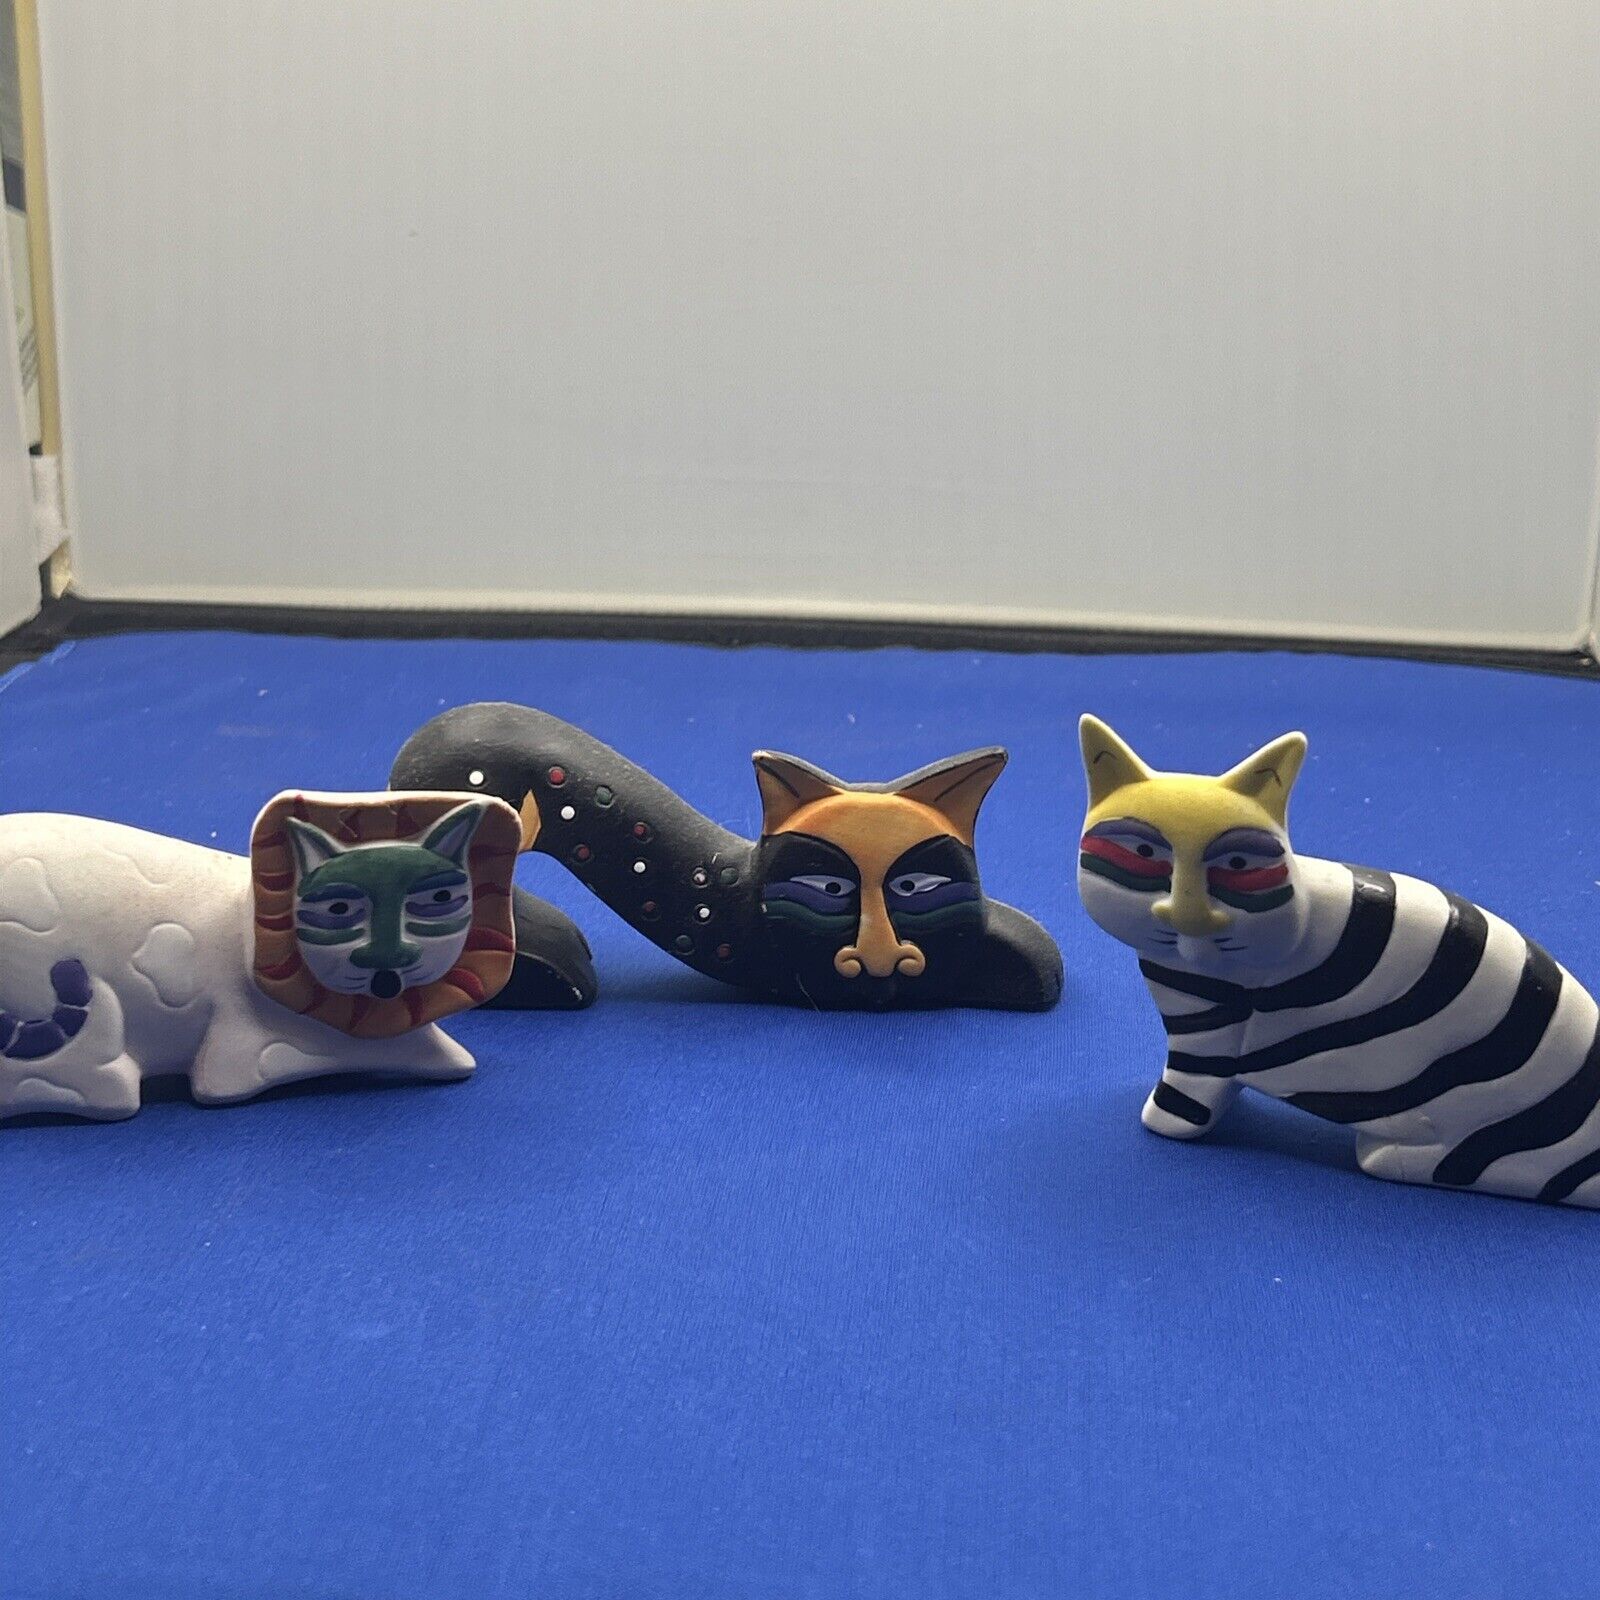 Set Of 3 Ceramic￼ Cat Figurines In The Style Of Laurel Burch